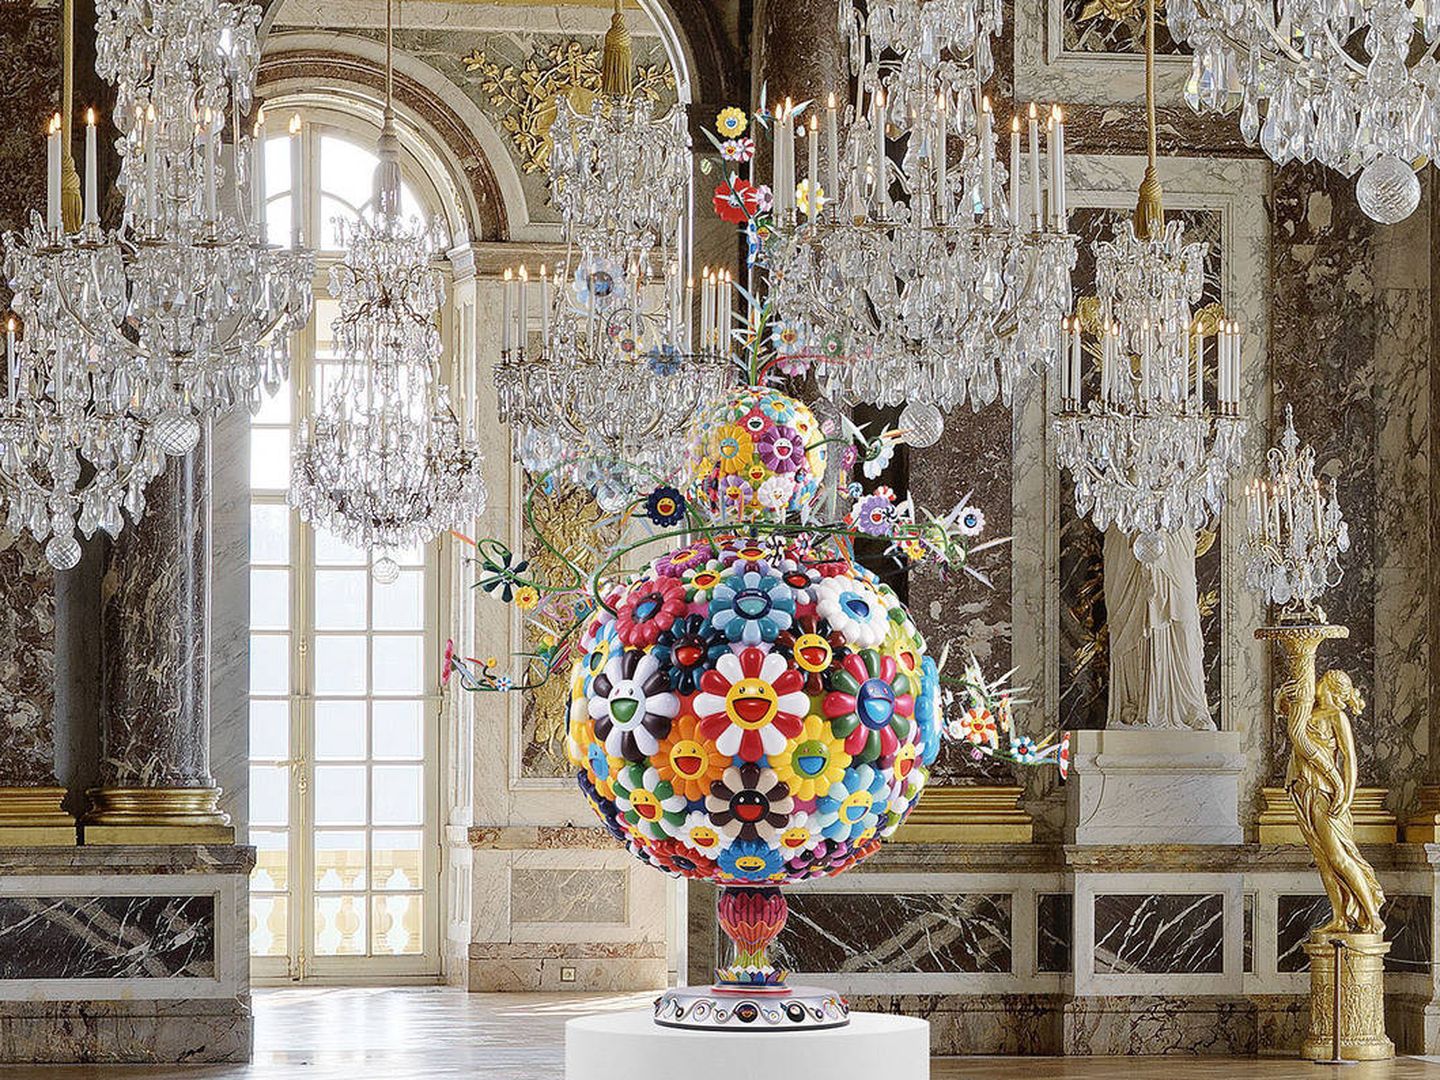 La Galería de los Espejos del Palacio de Versalles (1684) con una de las esculturas de Takashi Murakami que se instalaron en 2010.